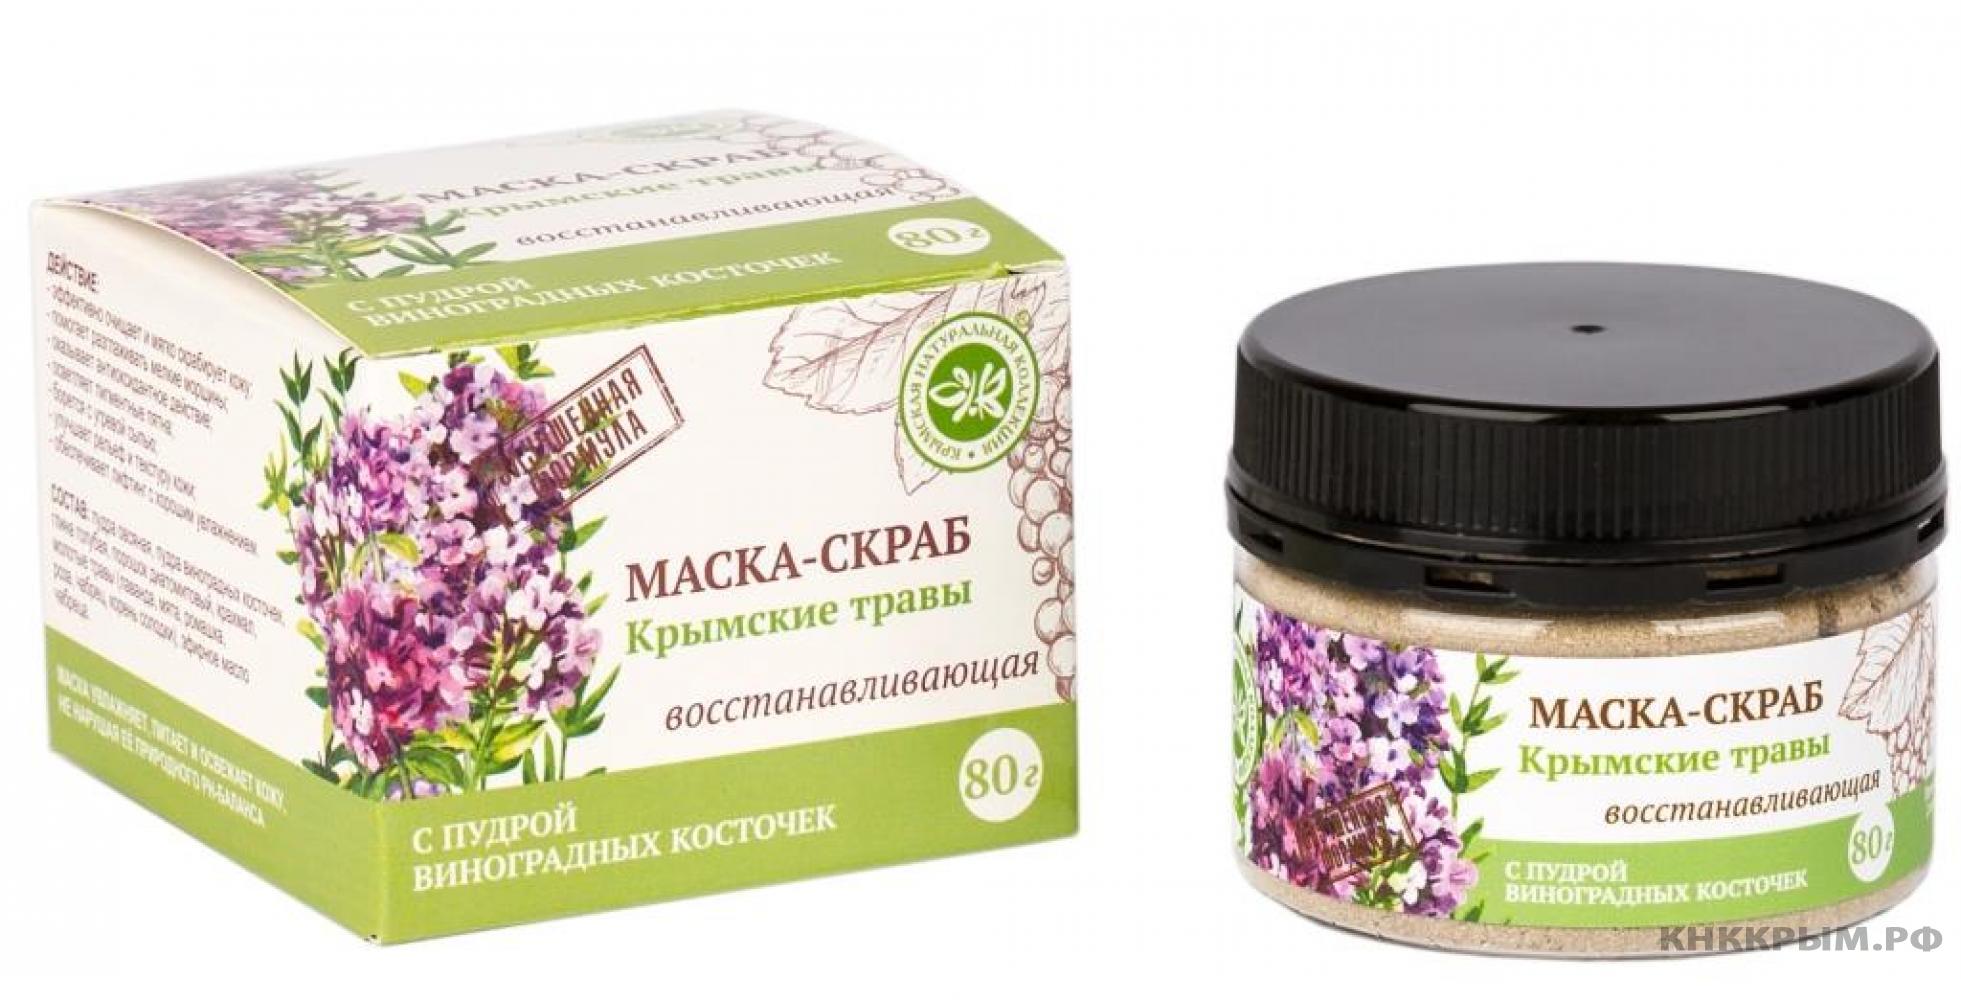 Маска-скраб с пудрой виноградных косточек 80 г (Крымские травы)